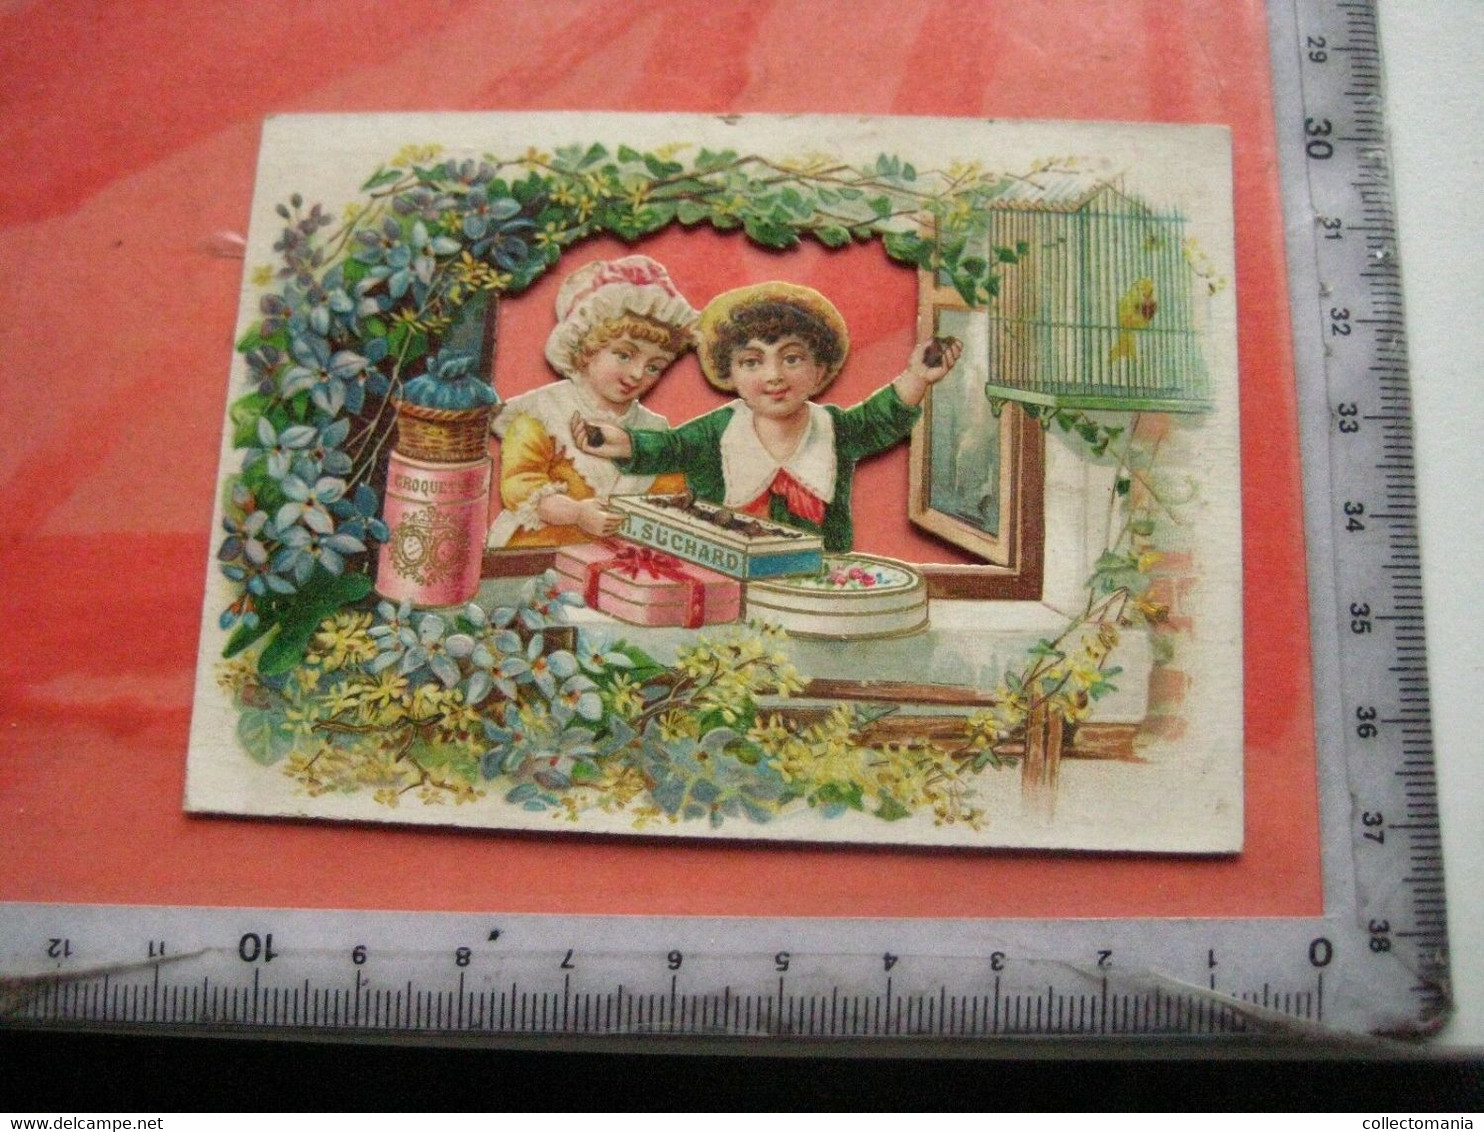 1 Die Cut Advertising Card C1891 Chocolate SUCHARD V17 L - Open Window, Birdcage Découpi Ausgeschnitten - Suchard